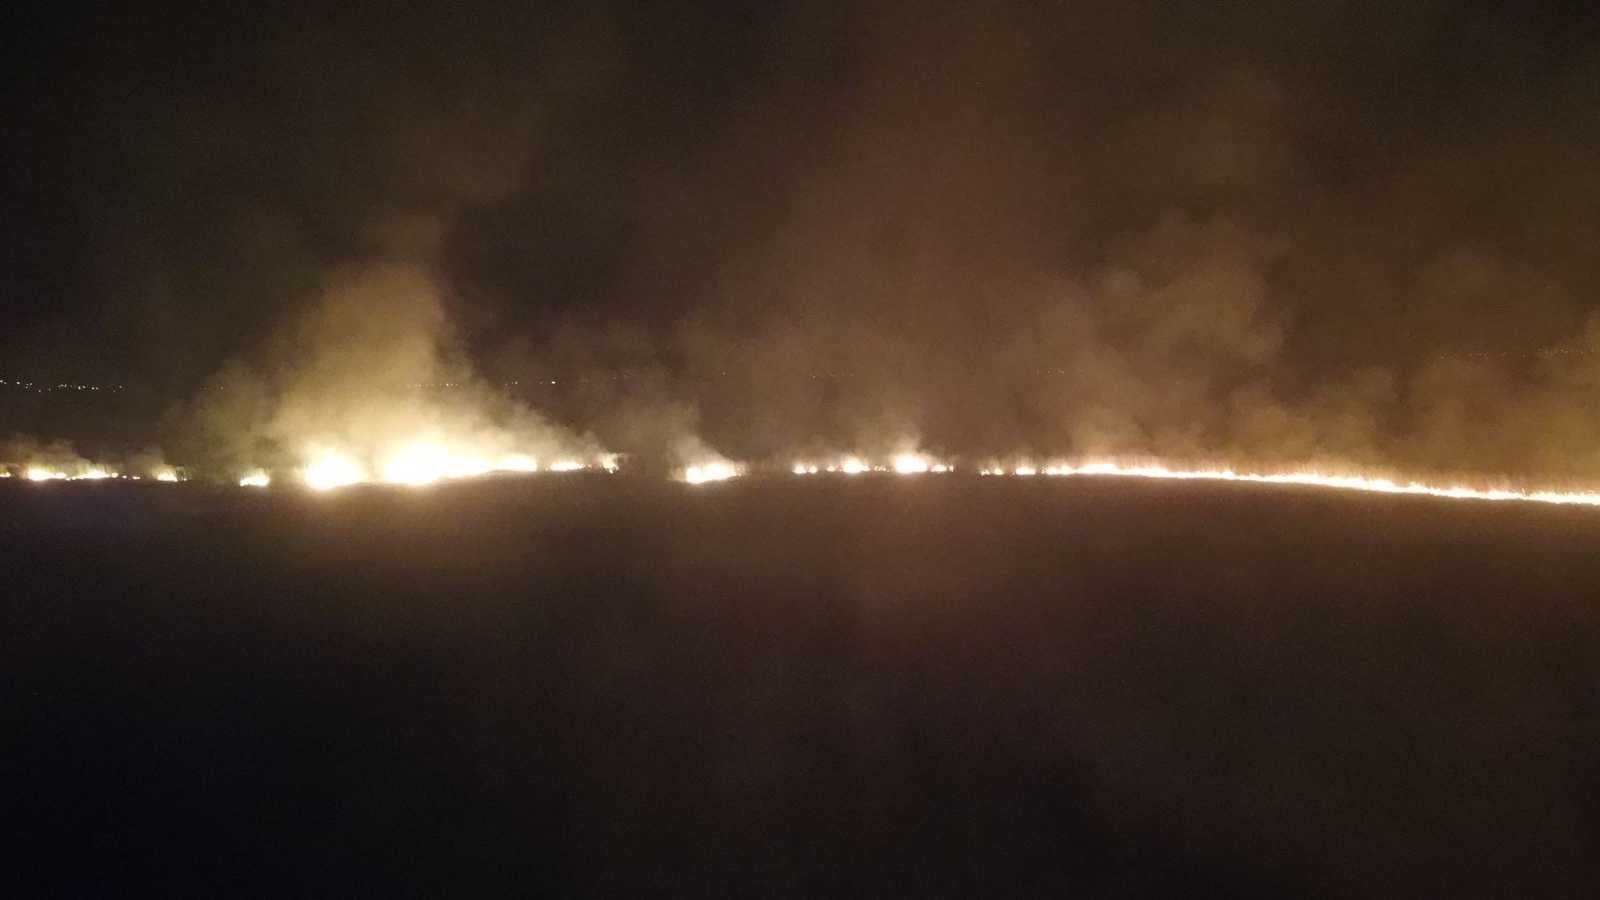 Karamık Gölü’nde 6 gün arayla ikinci sazlık alan yangını #afyonkarahisar